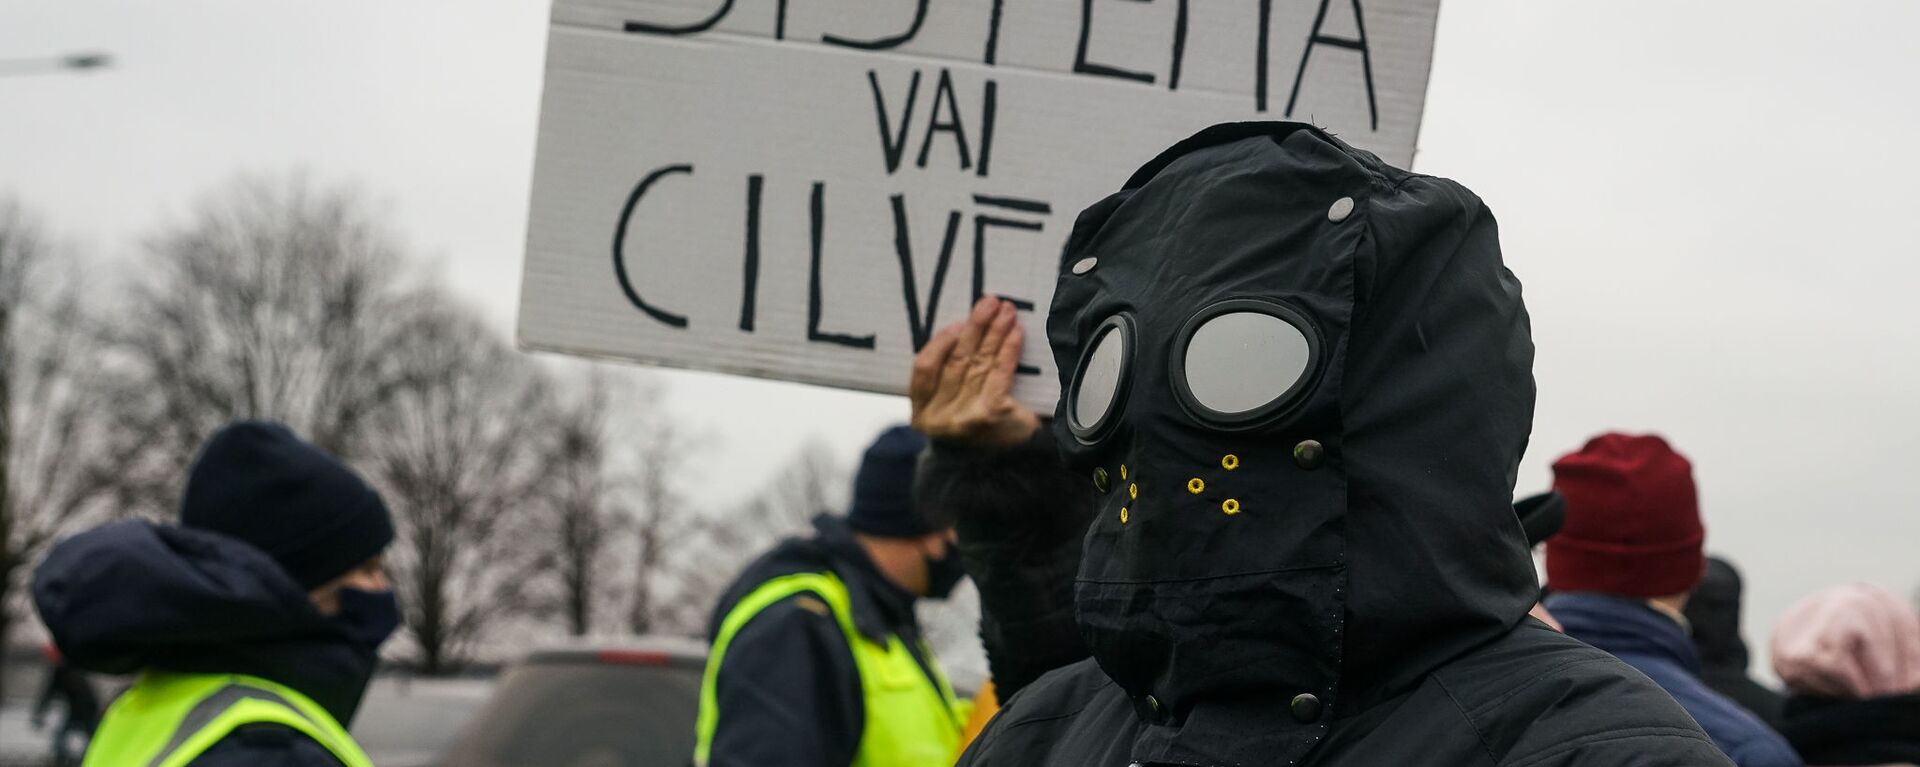 Акция протеста на набережной 11 Ноября в Риге против ограничений в связи с пандемией COVID-19 - Sputnik Латвия, 1920, 13.09.2021